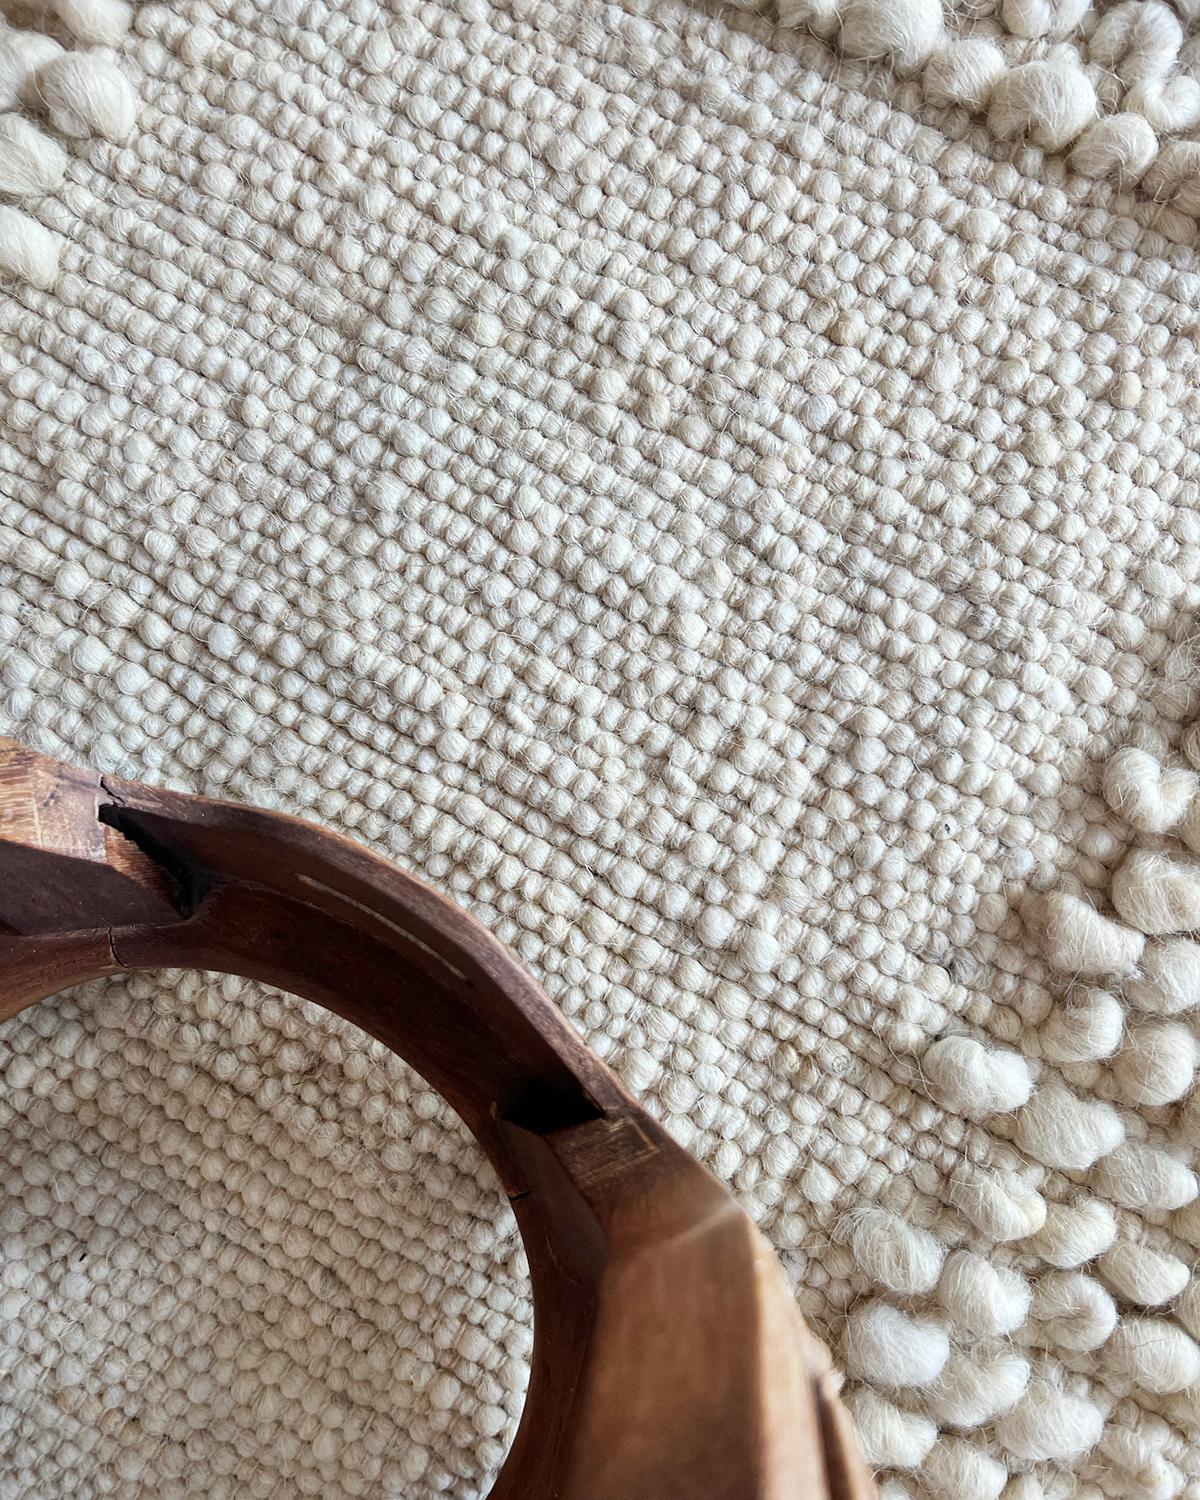 Un tapis en laine douillet et lumineux pour réchauffer votre intérieur. Conçu et fabriqué de manière experte, le tapis de zone en laine Bobble Fatima ajoute de la texture et de la chaleur à n'importe quel espace de vie. Fabriqué en laine naturelle